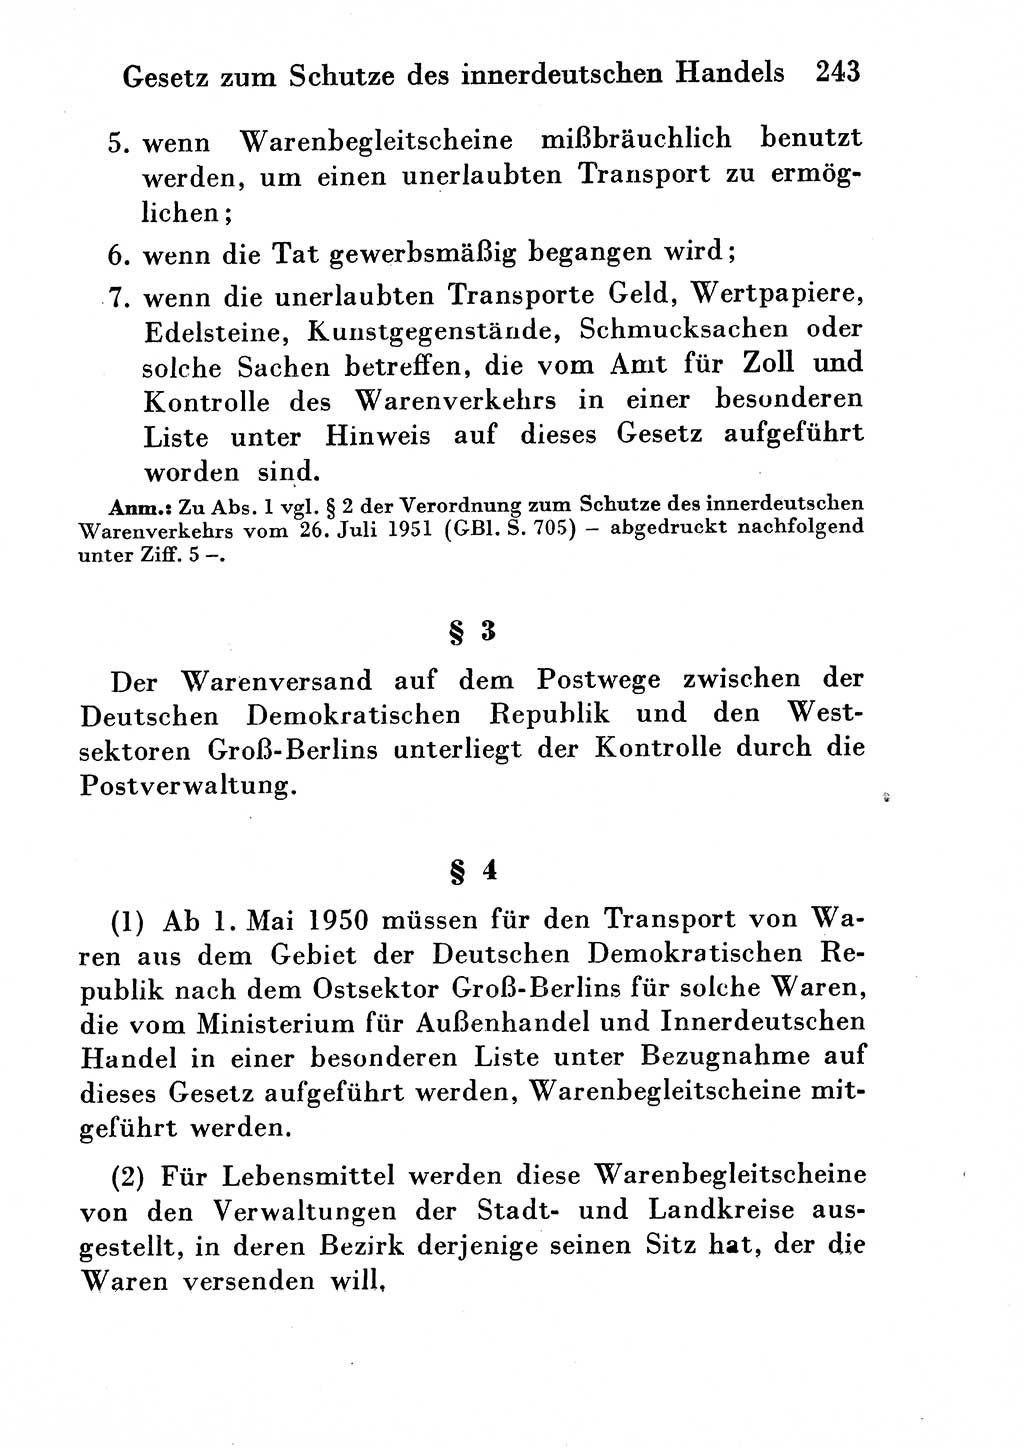 Strafgesetzbuch (StGB) und andere Strafgesetze [Deutsche Demokratische Republik (DDR)] 1954, Seite 243 (StGB Strafges. DDR 1954, S. 243)